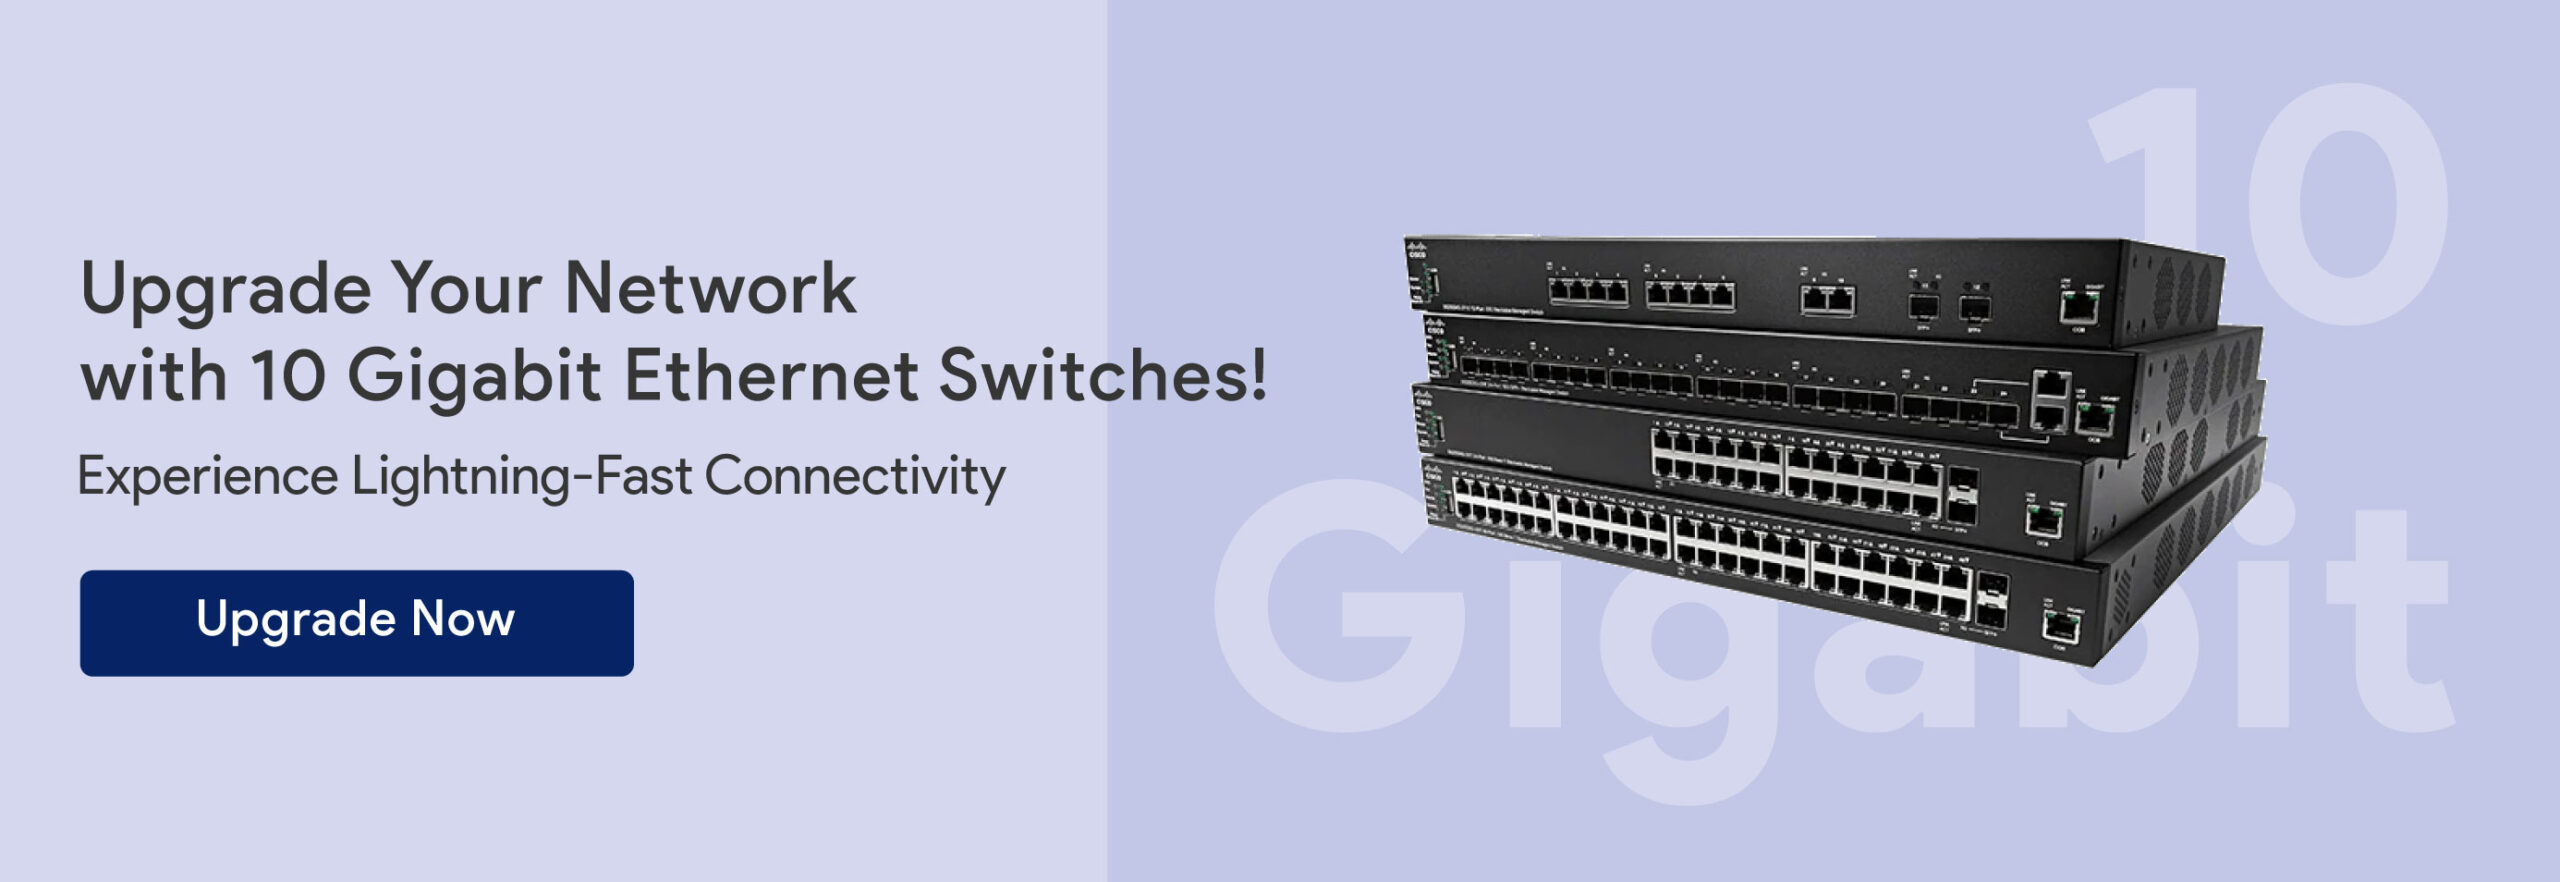 10-Gigabit-Ethernet-Switches